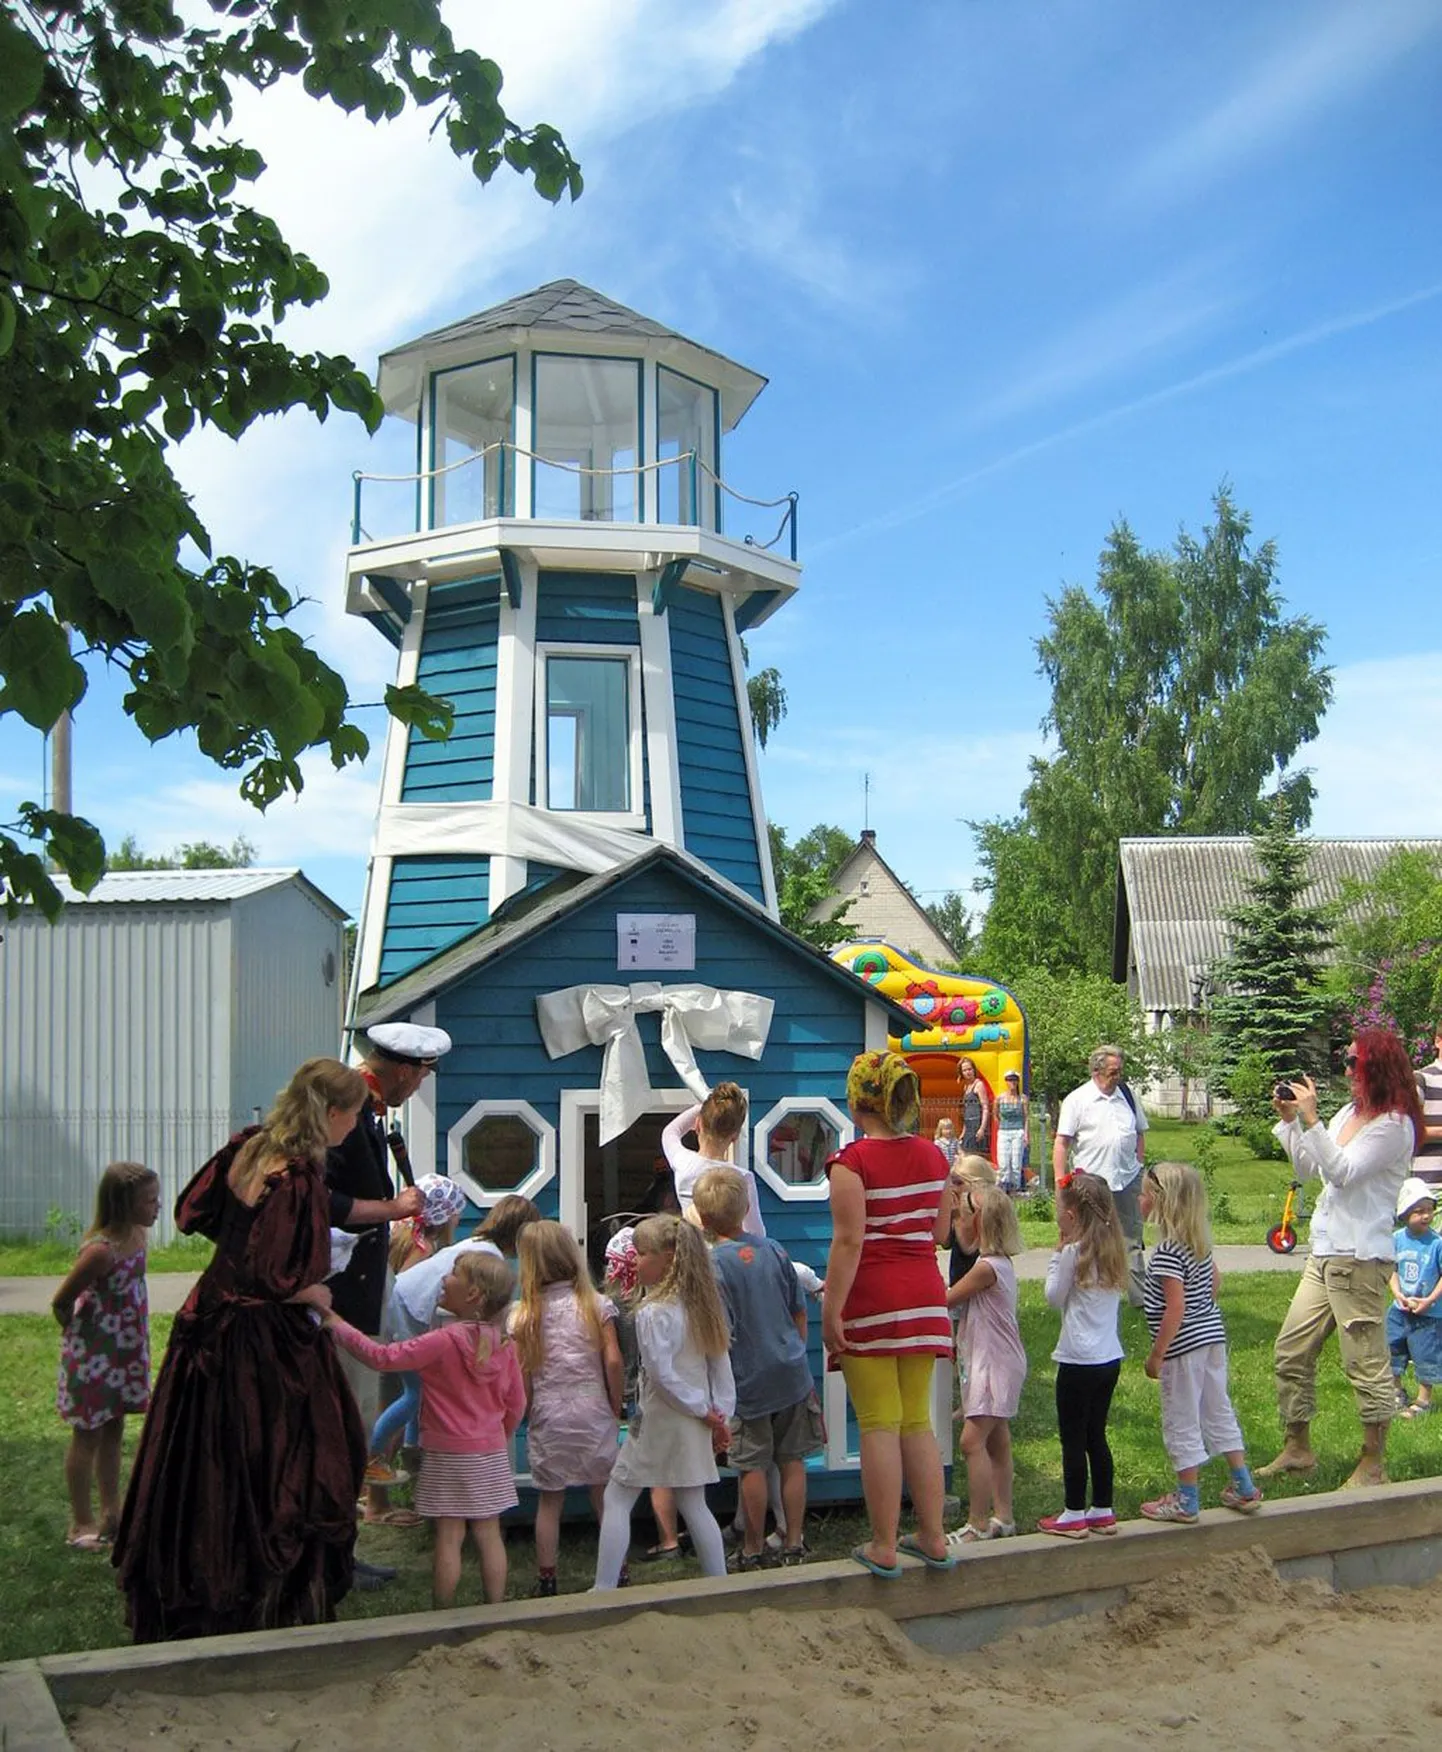 Lindi näitetrupi mereteemaline sketš ja muumimaja värvi majakas meelitasid kohalikud lapsed vahvasse majja piiluma. Majakas sümboliseerib külaelu mere ääres.